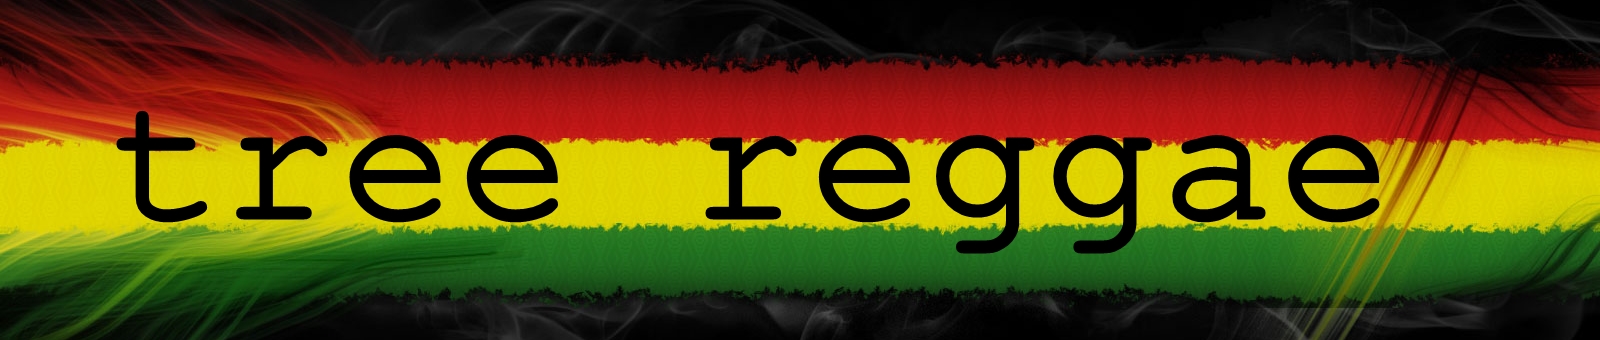 Tree Reggae